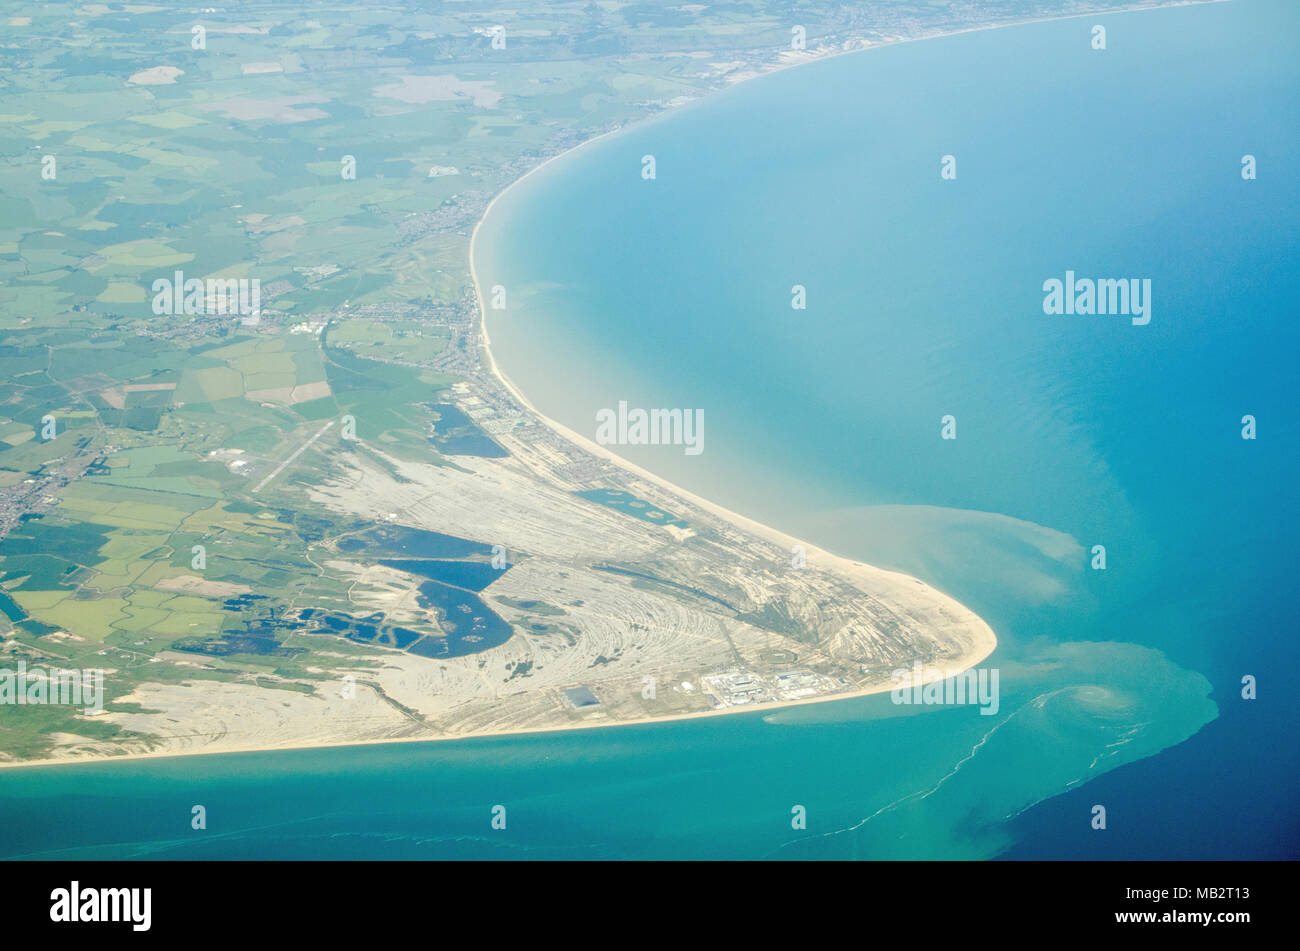 Vista aérea de Dungeness promontorio que se adentra en el canal de la Mancha en Kent, Inglaterra. Hacia el final es la estación de energía nuclear de Dungeness y Foto de stock